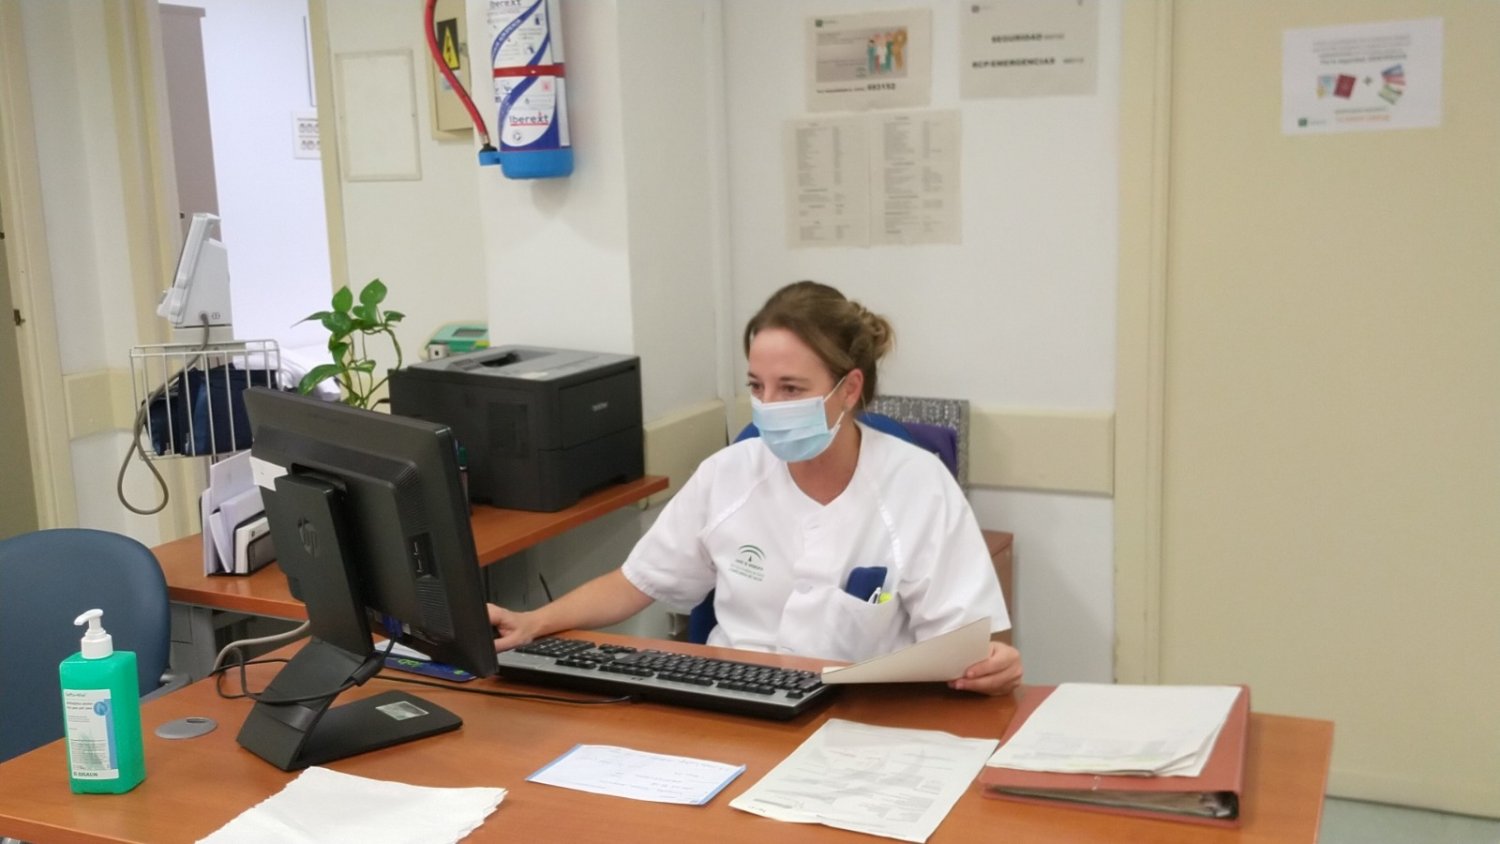 El Hospital Regional atiende unas 41.000 consultas telemáticas durante la pandemia de Covid-19